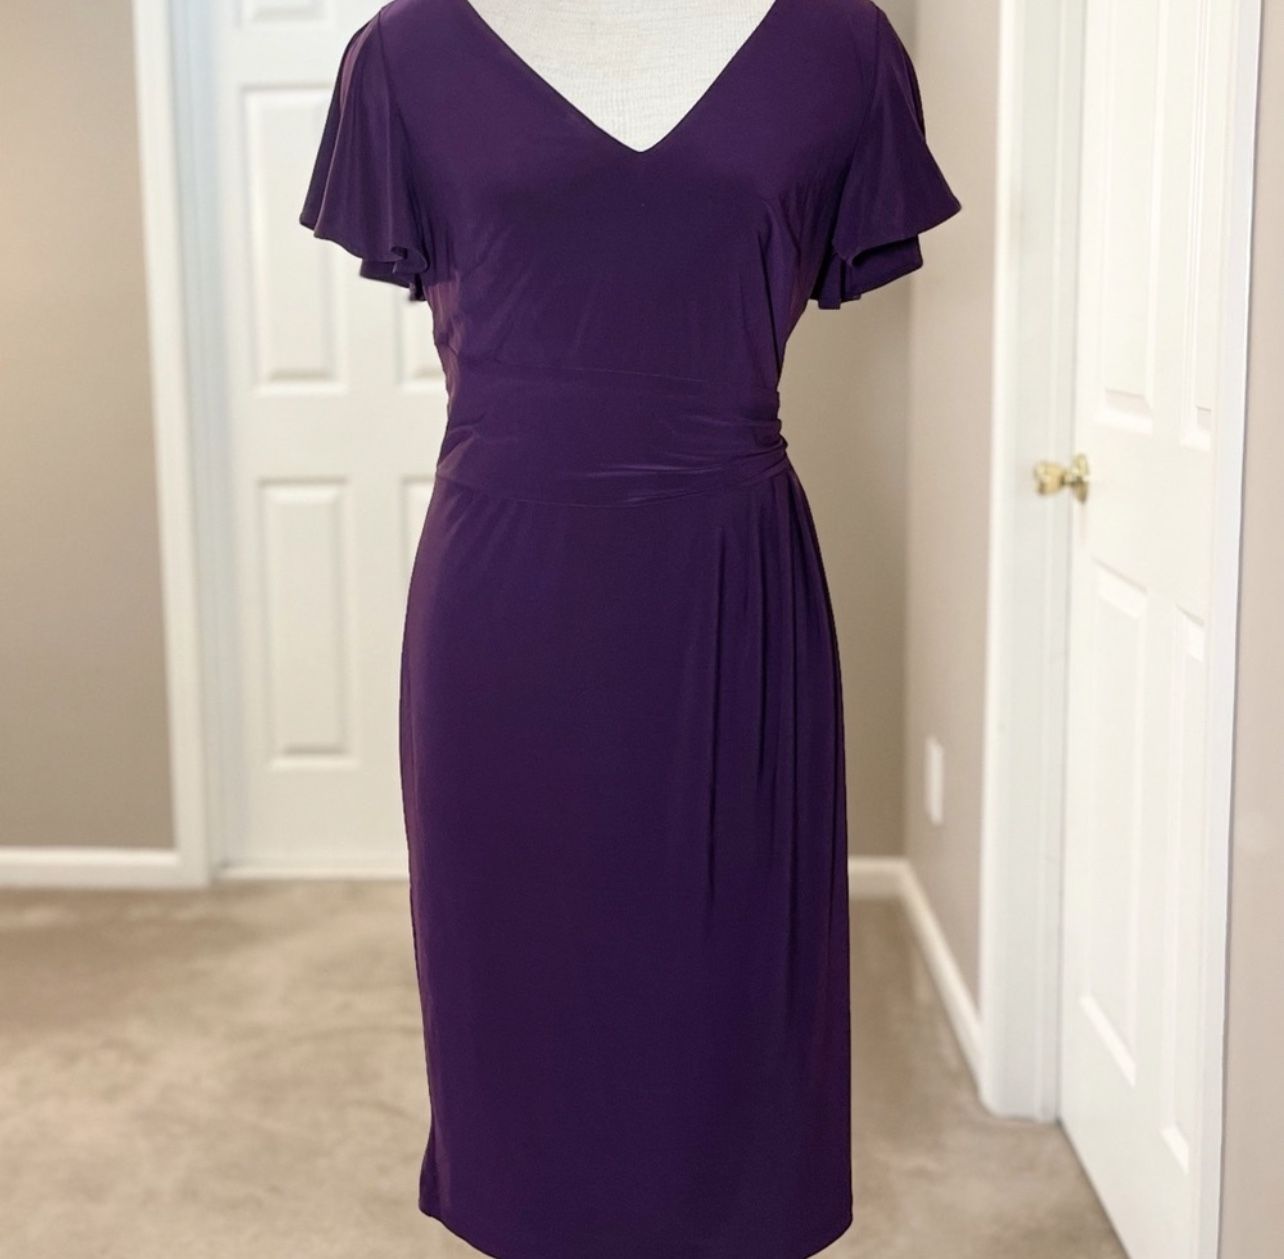 NWT Chaps Dress in purple, size medium. Feels very silky! Zipper in back.